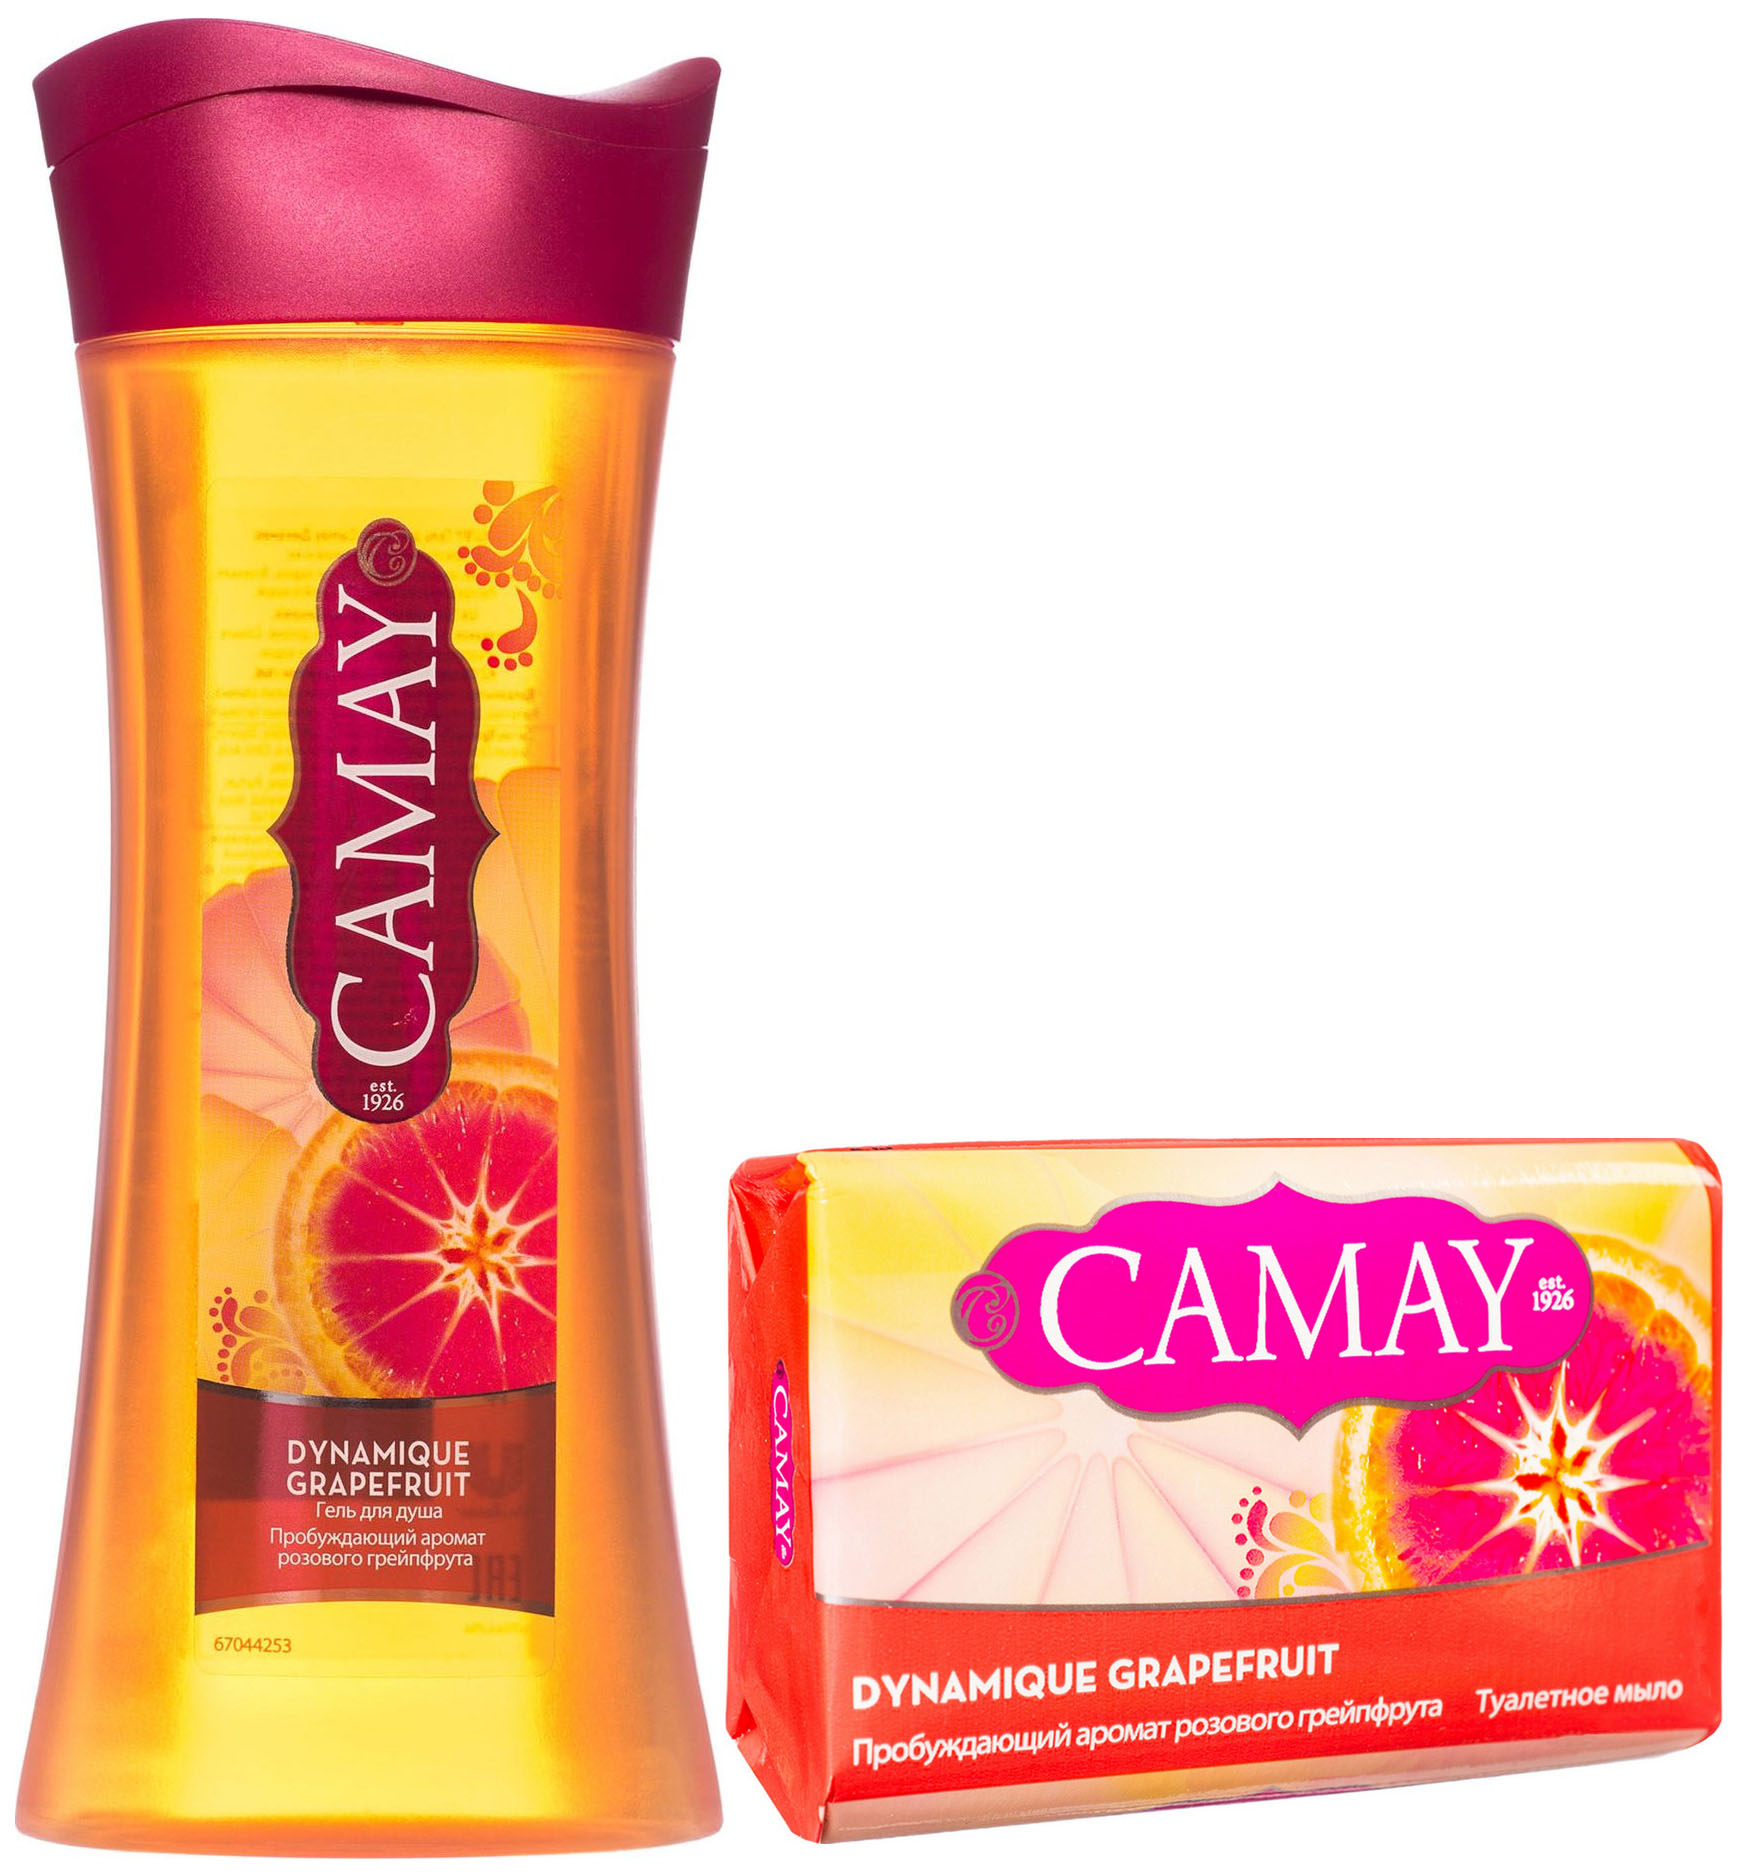 Гель для душа Camay Dynamique Grapefruit 250 мл + Мыло Camay Dynamique Grapefruit 85 г мыло туалетное camay романтик 85 г